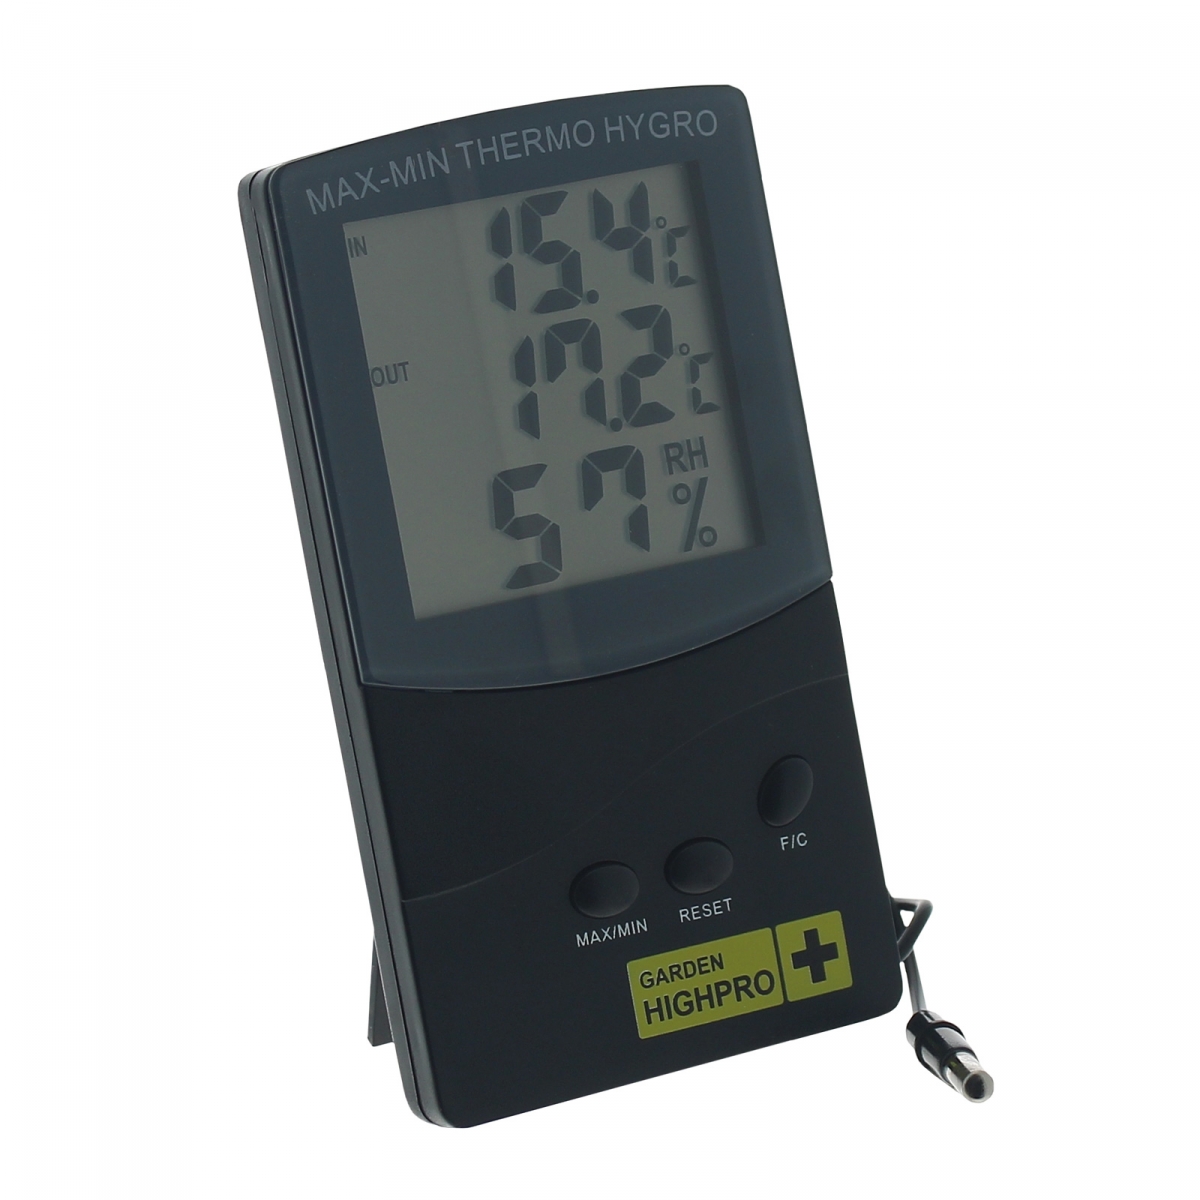 Tout savoir sur le thermomètre hygromètre connecté